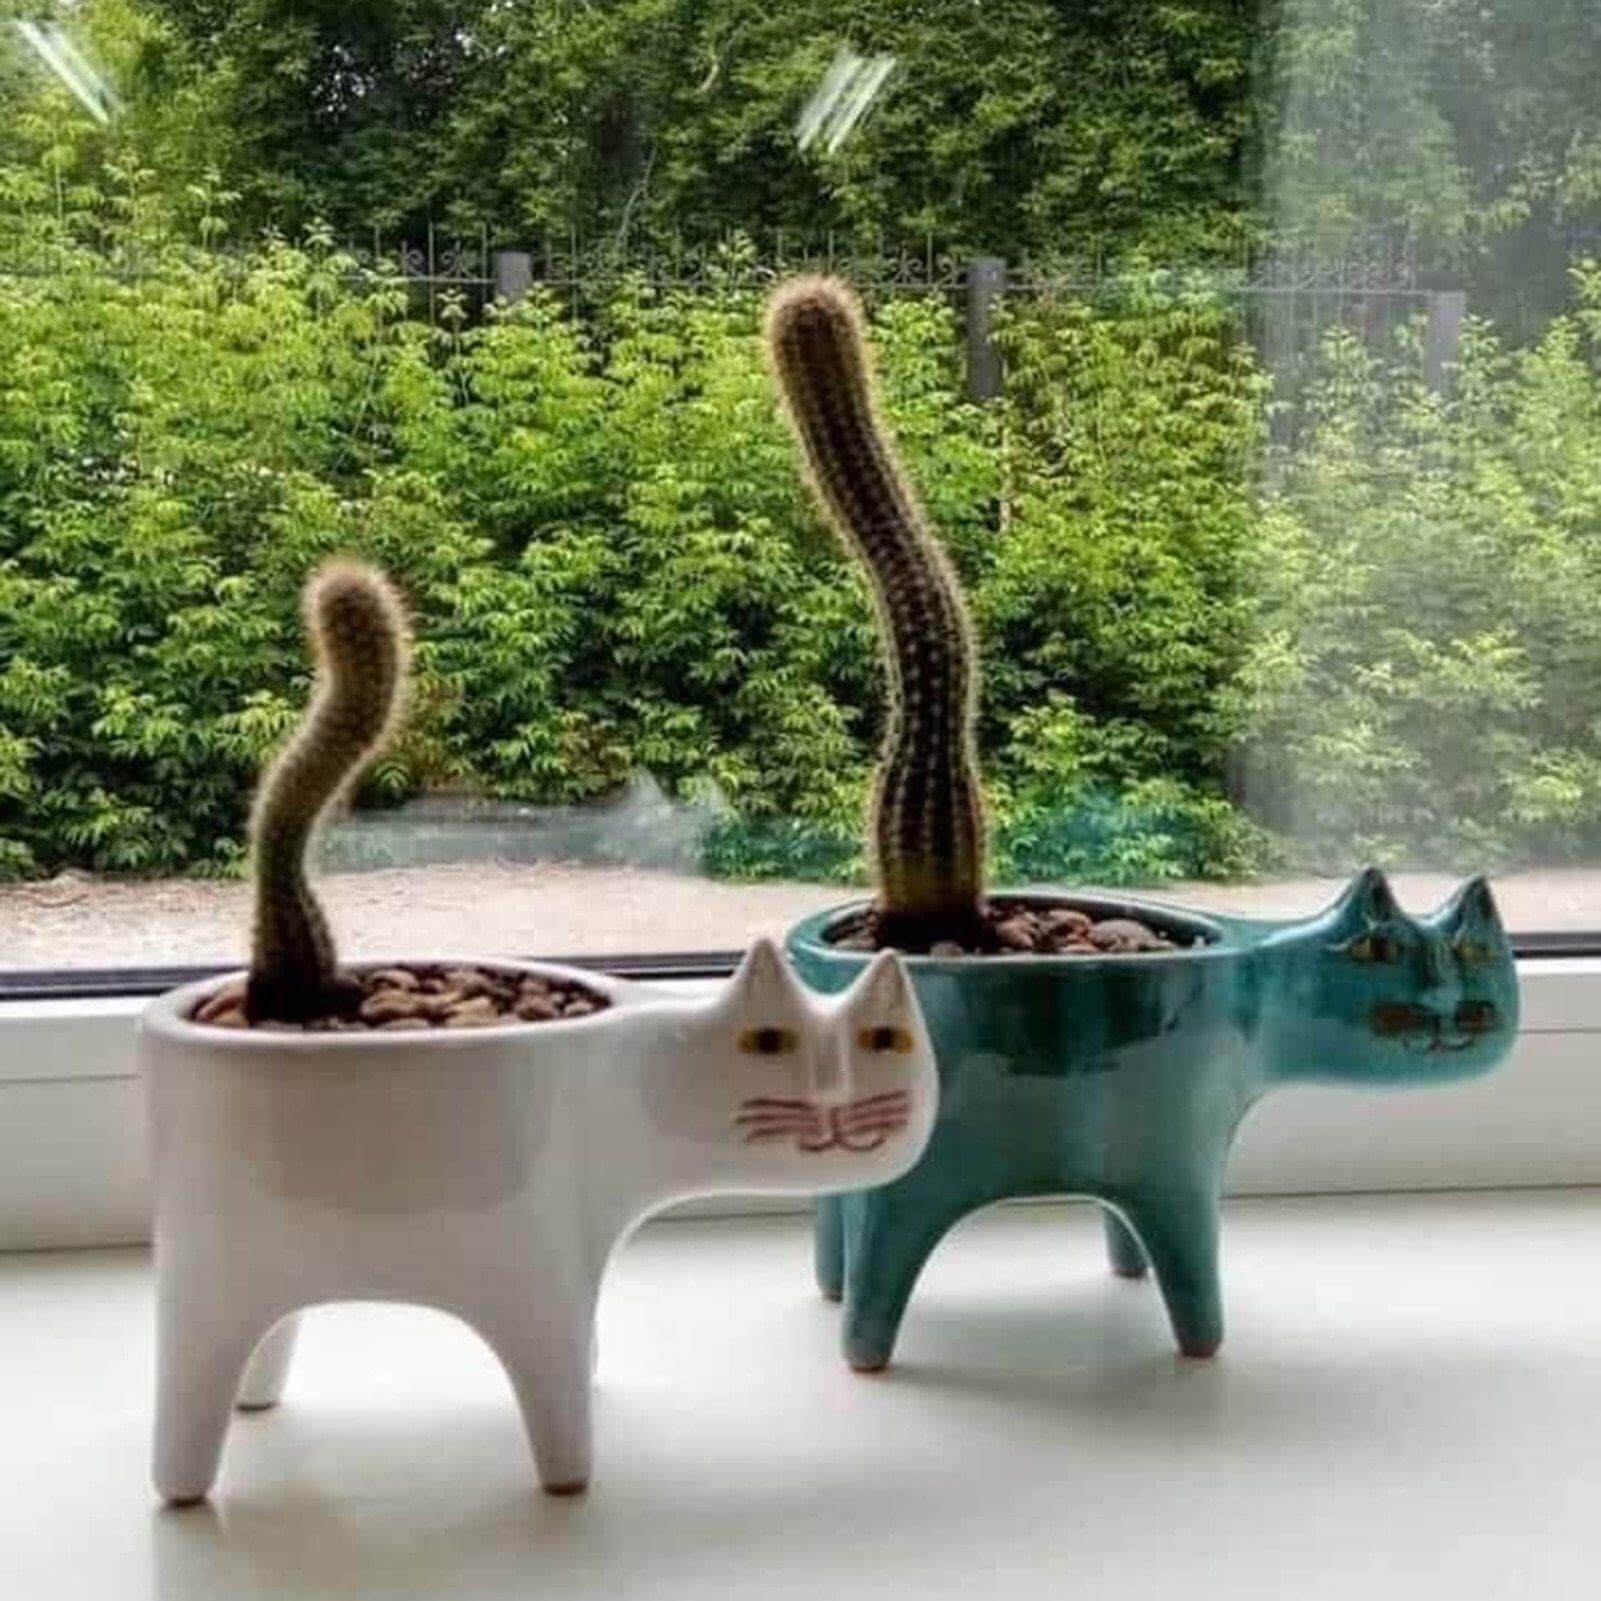 Lovely Ceramic Cat Plant Vase